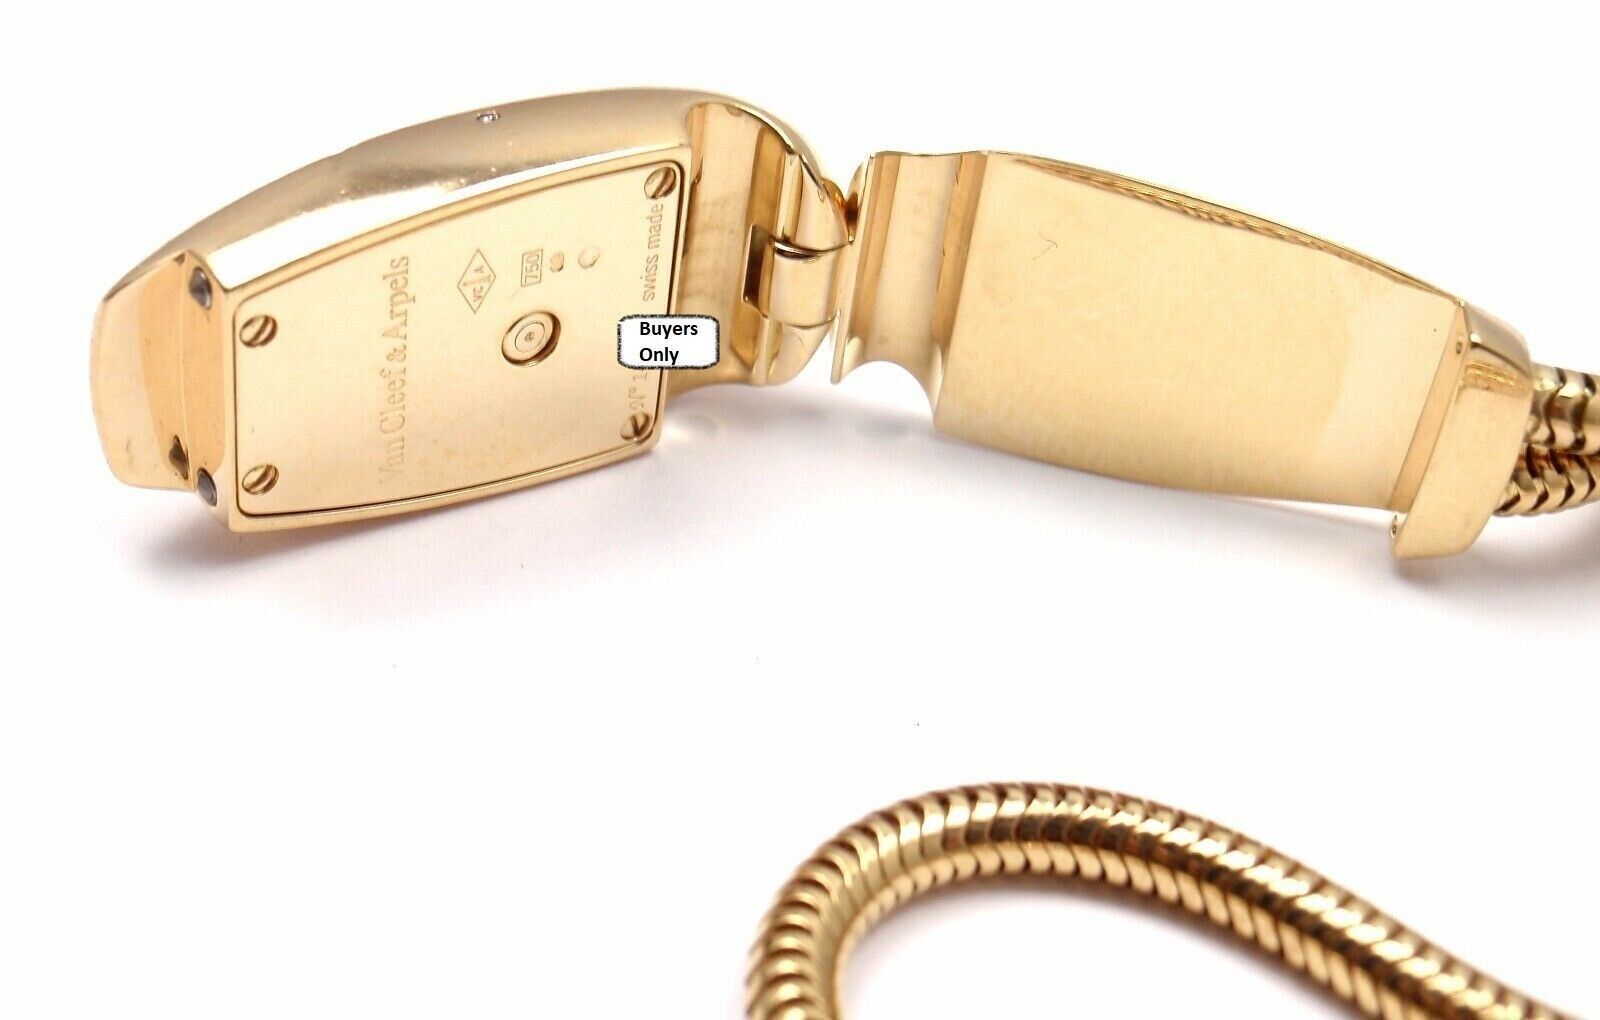 Van Cleef & Arpels Jewelry & Watches:Watches, Parts & Accessories:Watches:Wristwatches Authentic Van Cleef & Arpels 18k Yellow Gold Cadenas Serti Diamond Ladies Watch